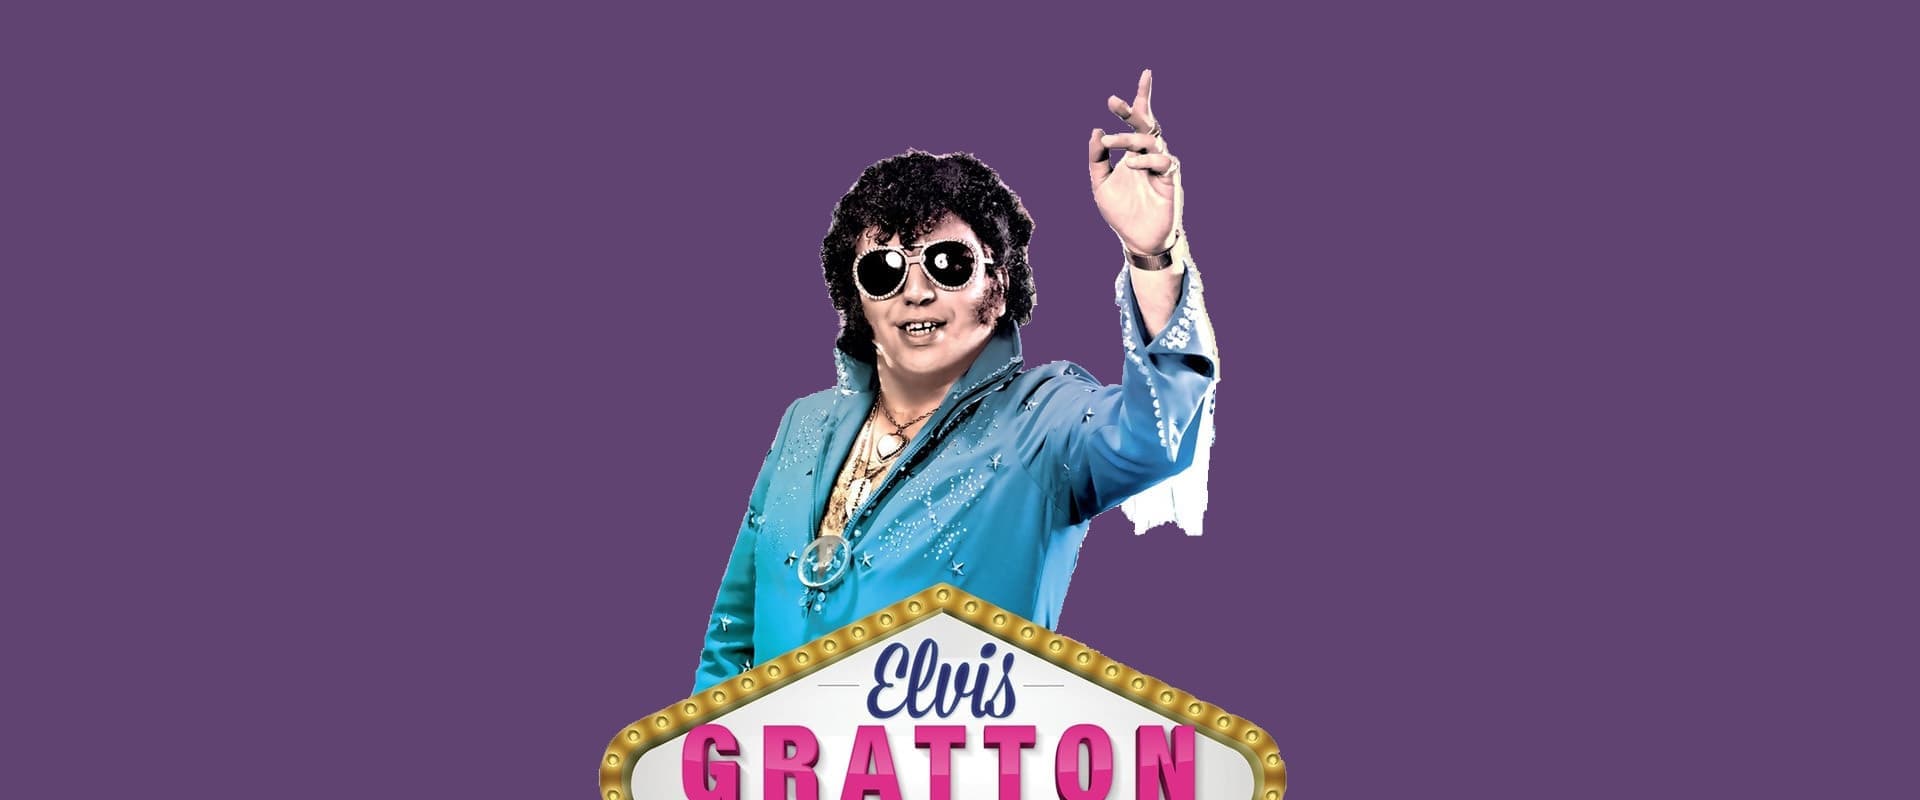 Elvis Gratton